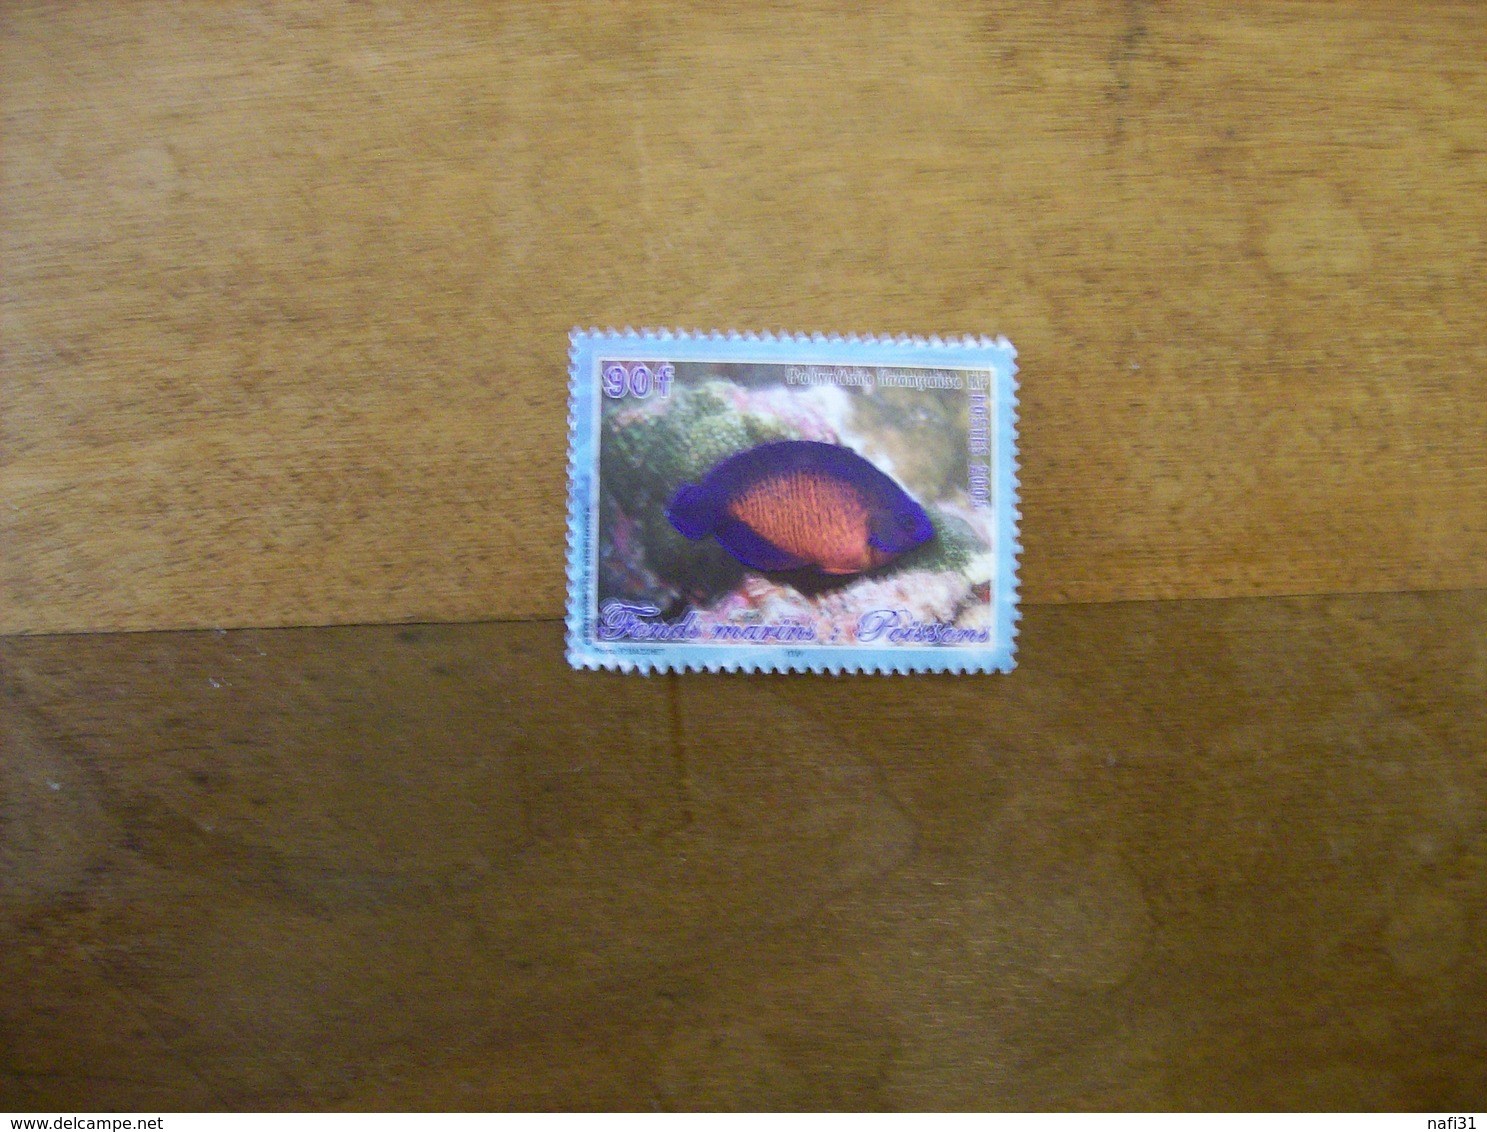 POLYNESIE N 744 Ob Annee 2005 Cote 0.75 Yvert - Used Stamps